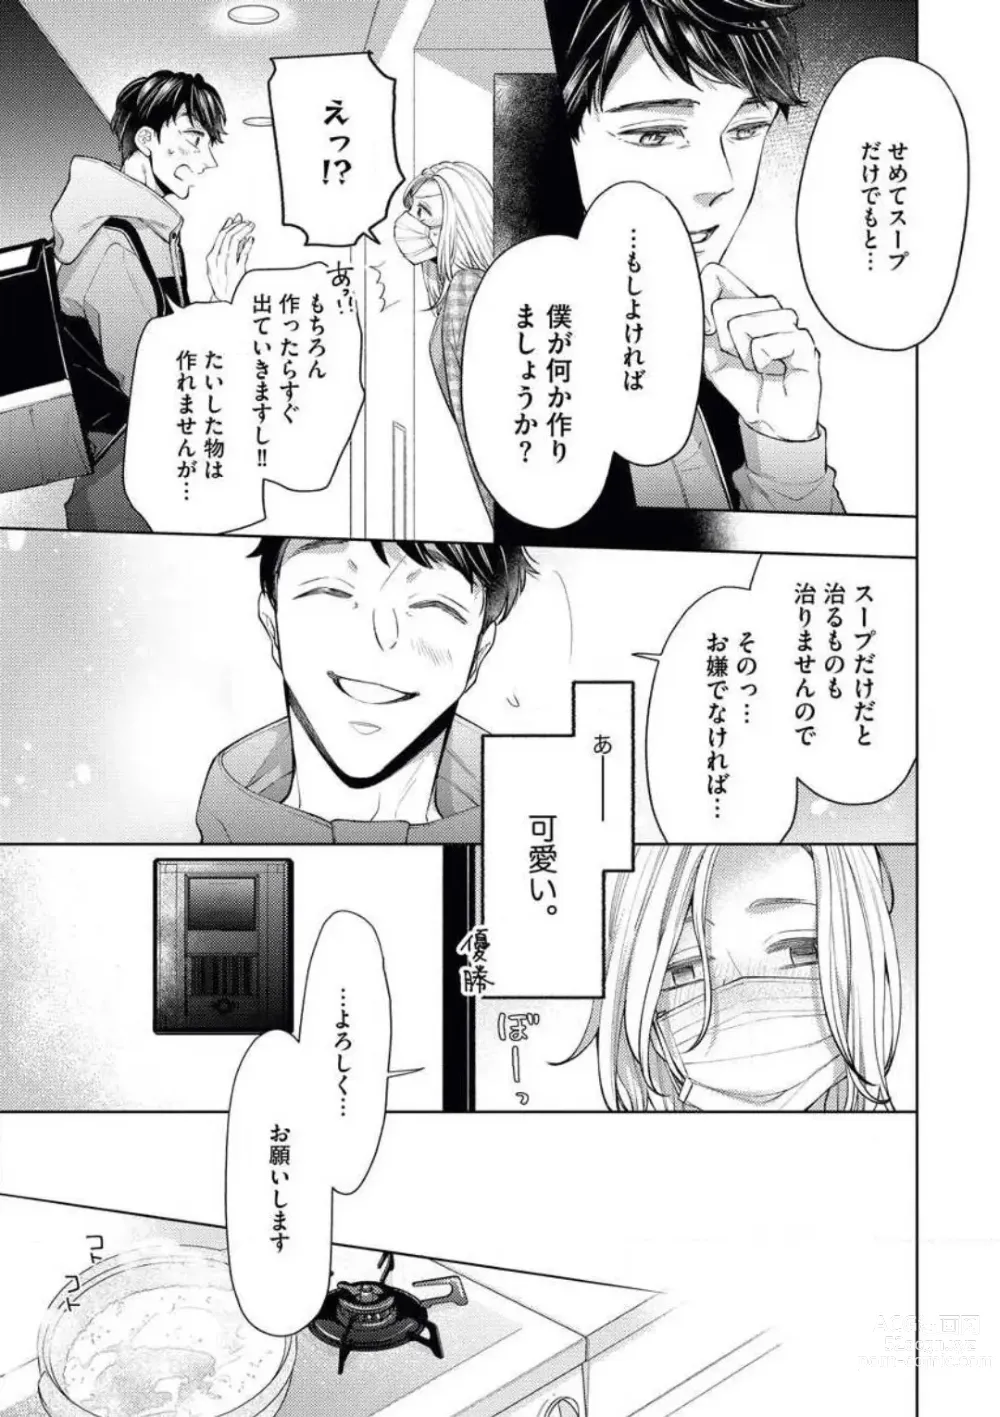 Page 11 of manga Anata o Kudasai!